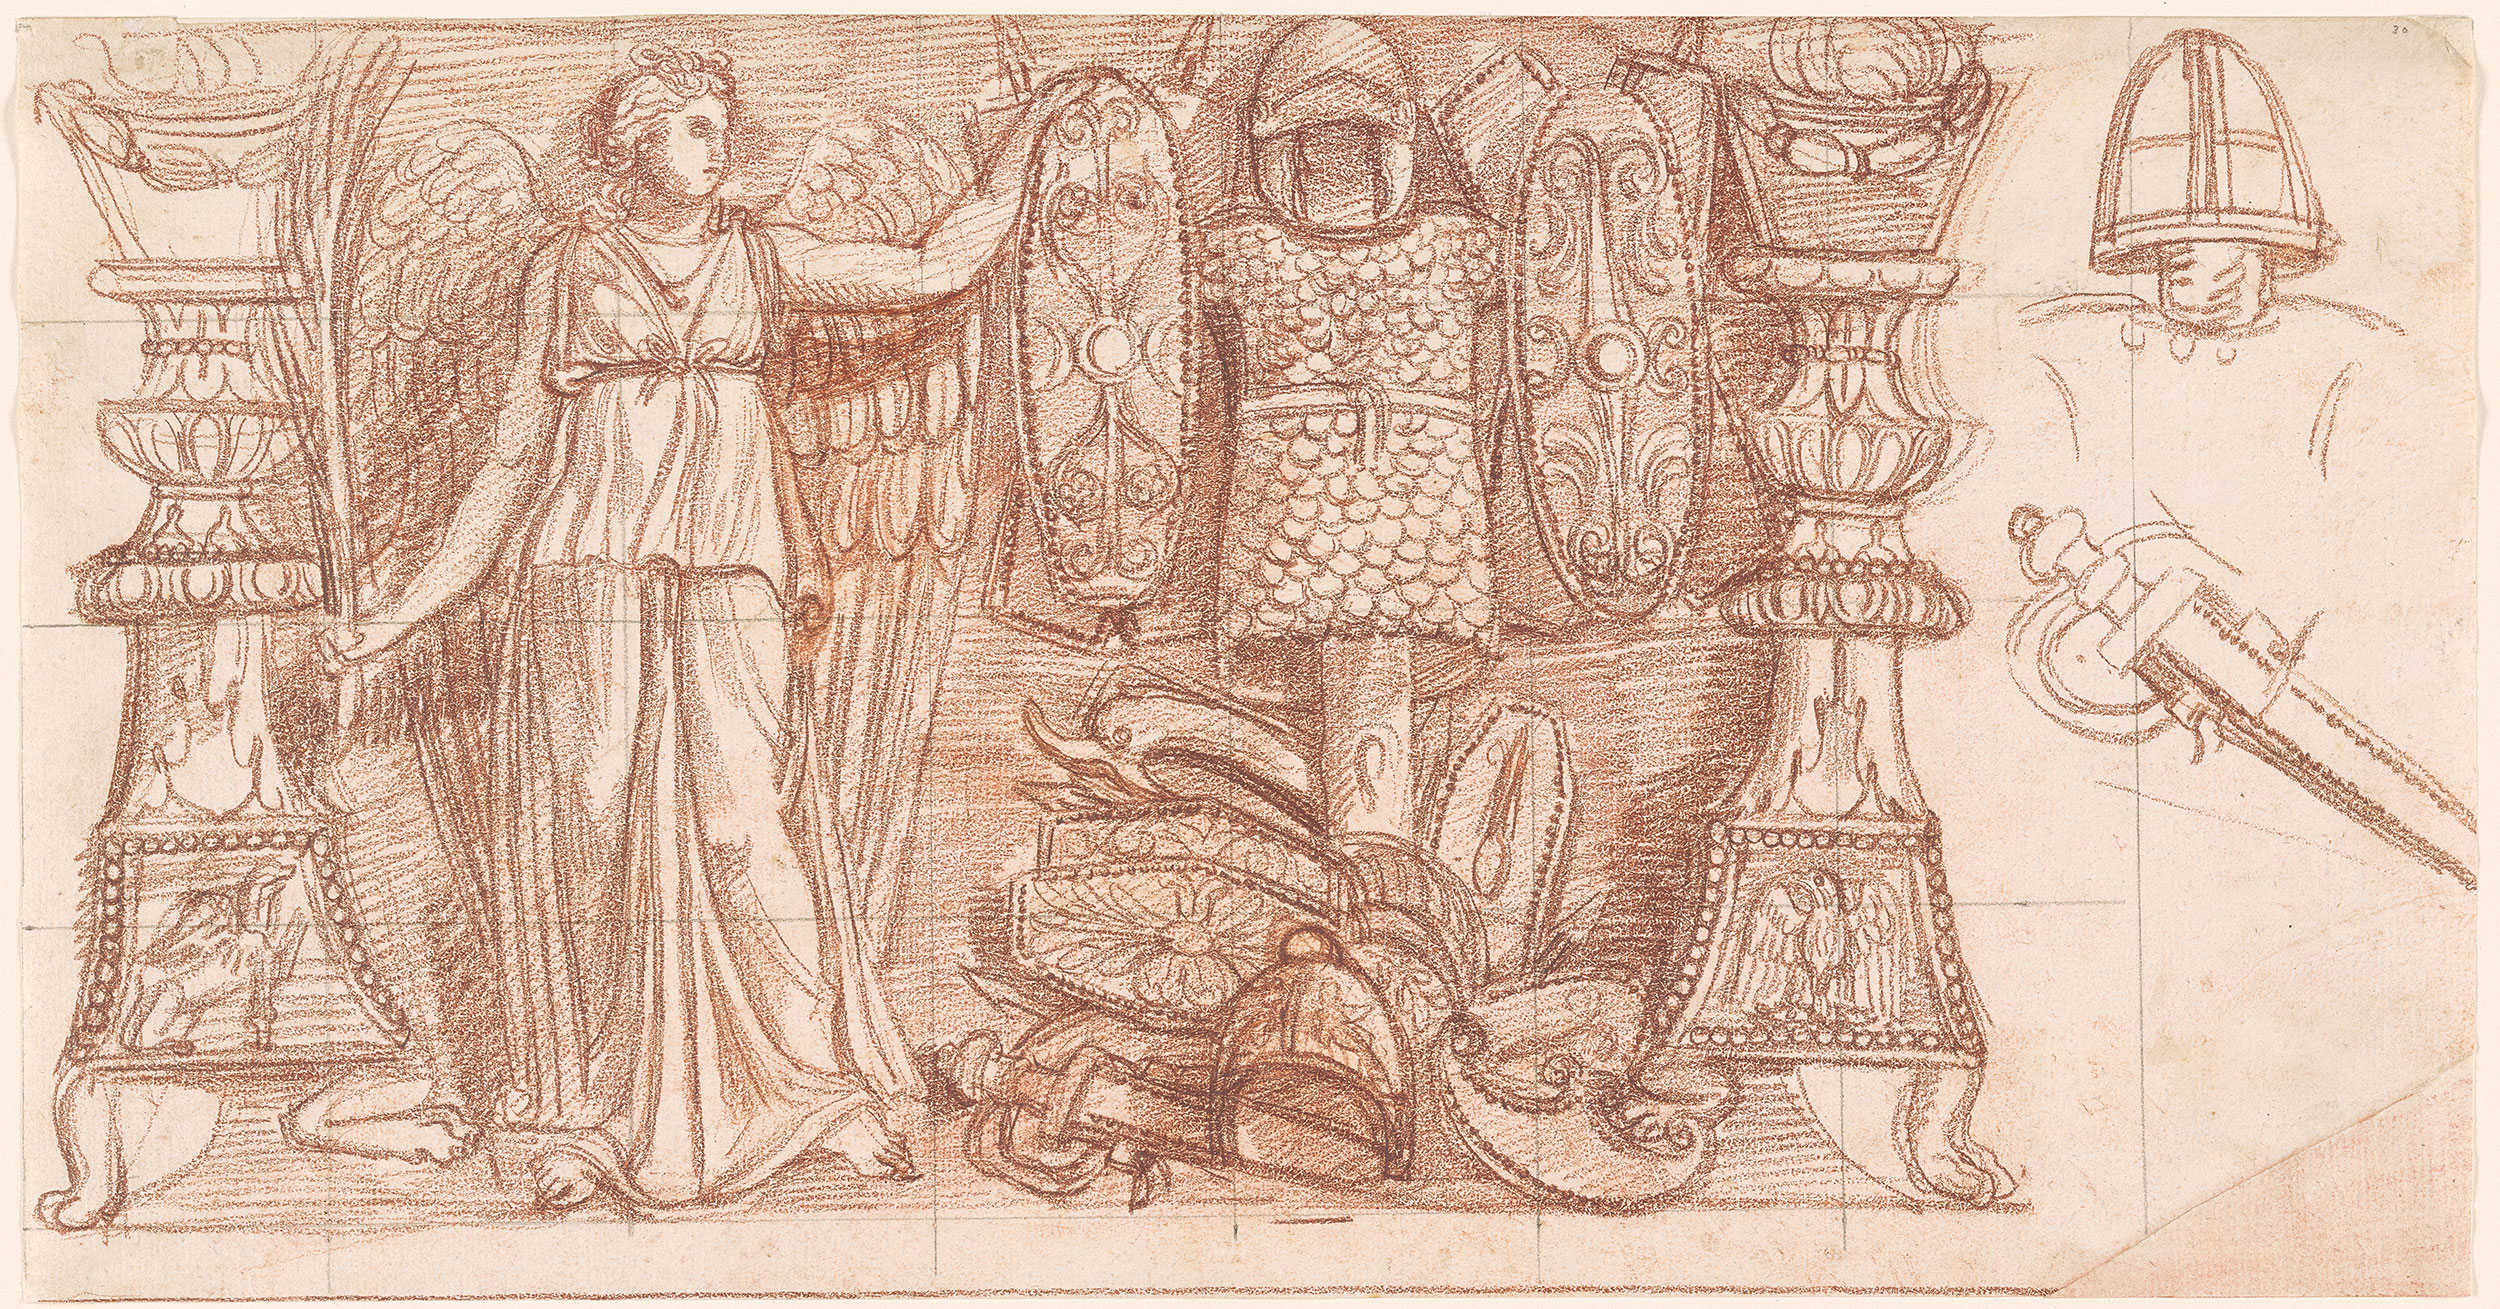 Zeichnung des Viktoria-Trophäen-Reliefs, Abschnitt A mit Rötelkreide und schwarzer Kreide oder schwarzem Stift. Dargestellt ist die Allegorie des Sieges mit Kriegsattributen